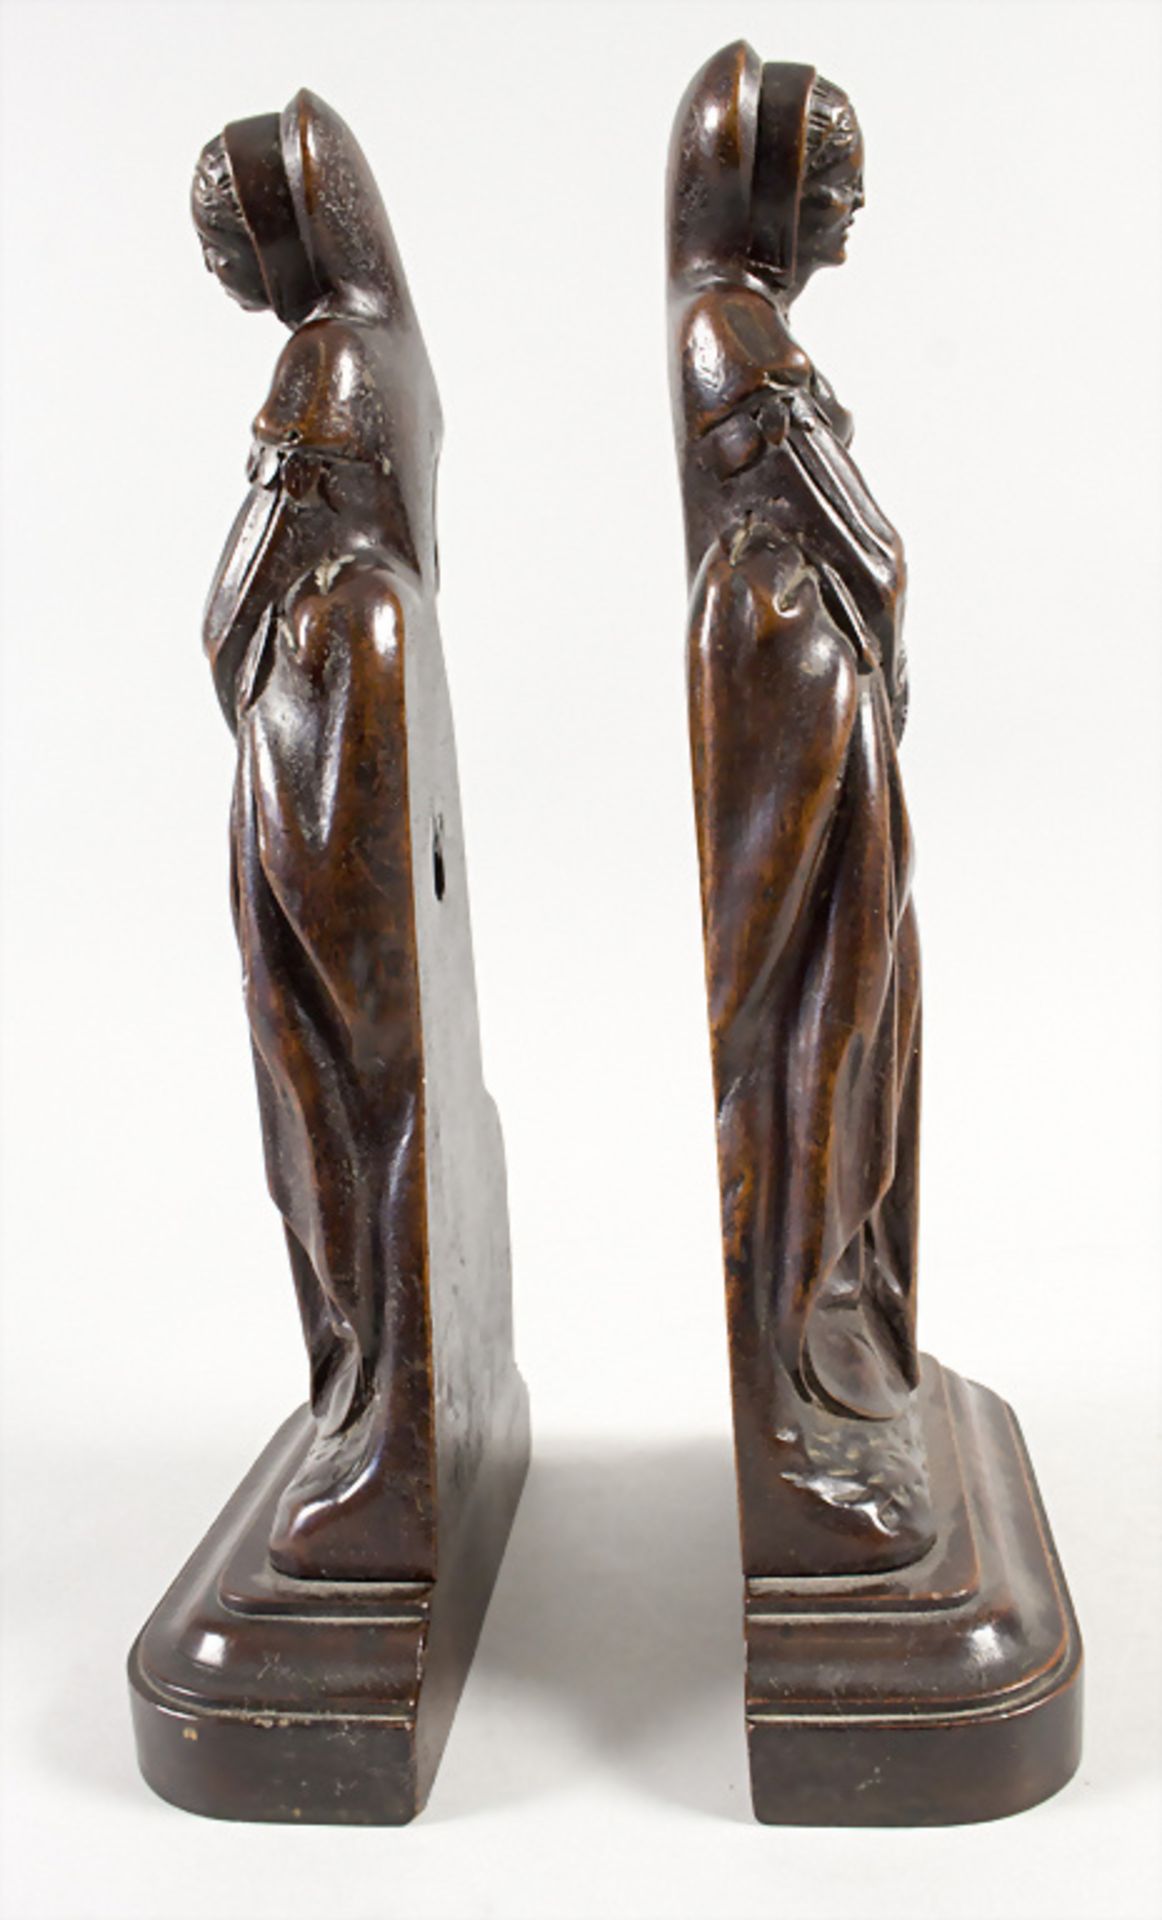 Paar Renaissance Skulpturen / A pair of Renaissance wooden sculptures, wohl 16. Jh.